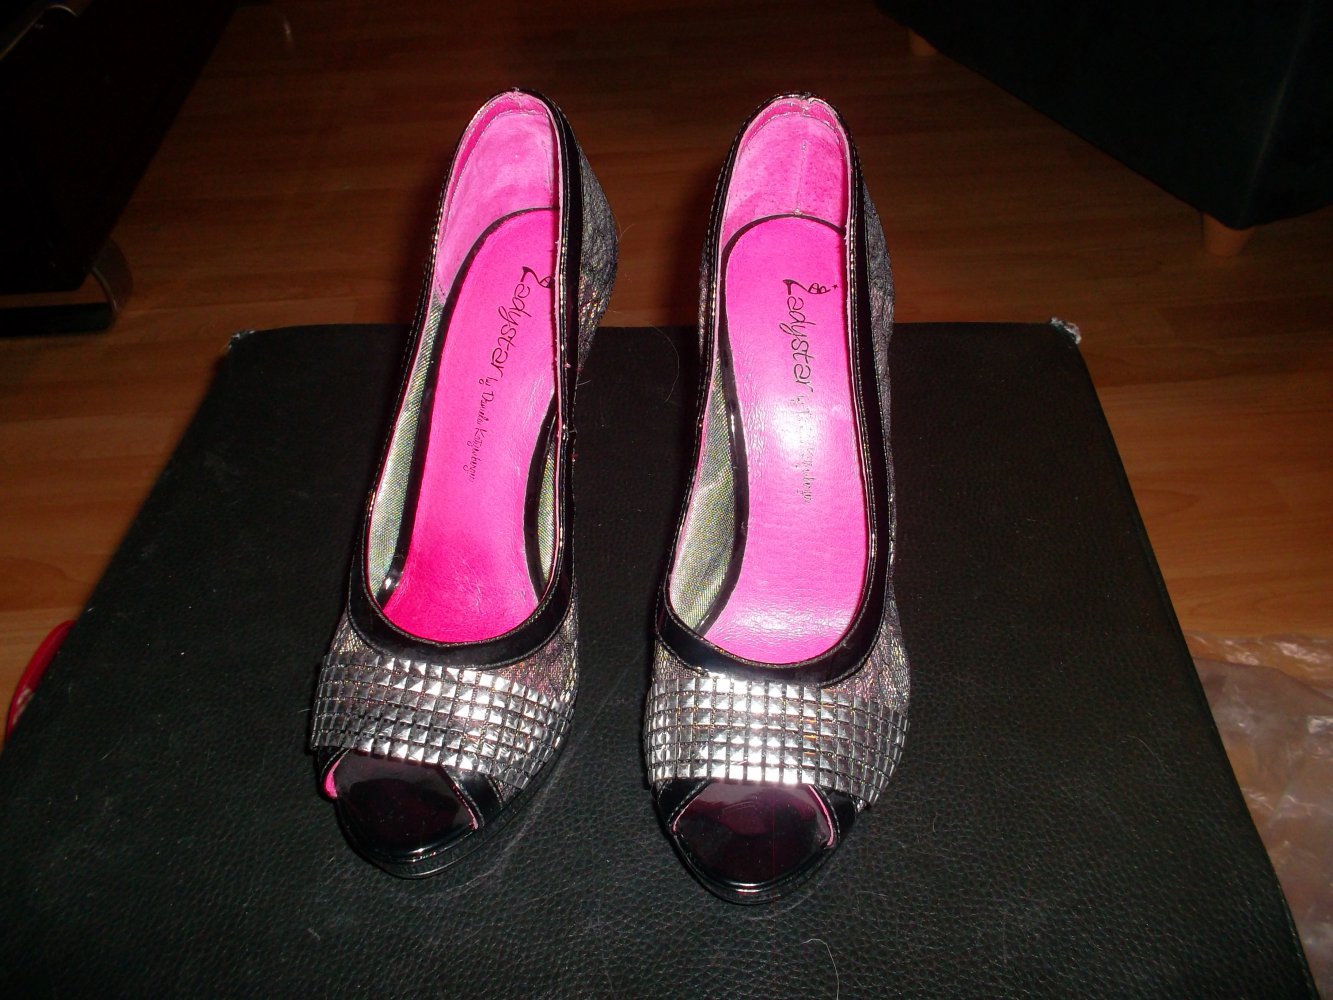 daniela katzenberger,neu,high heels,grösse 37,silber/schwarz/pink